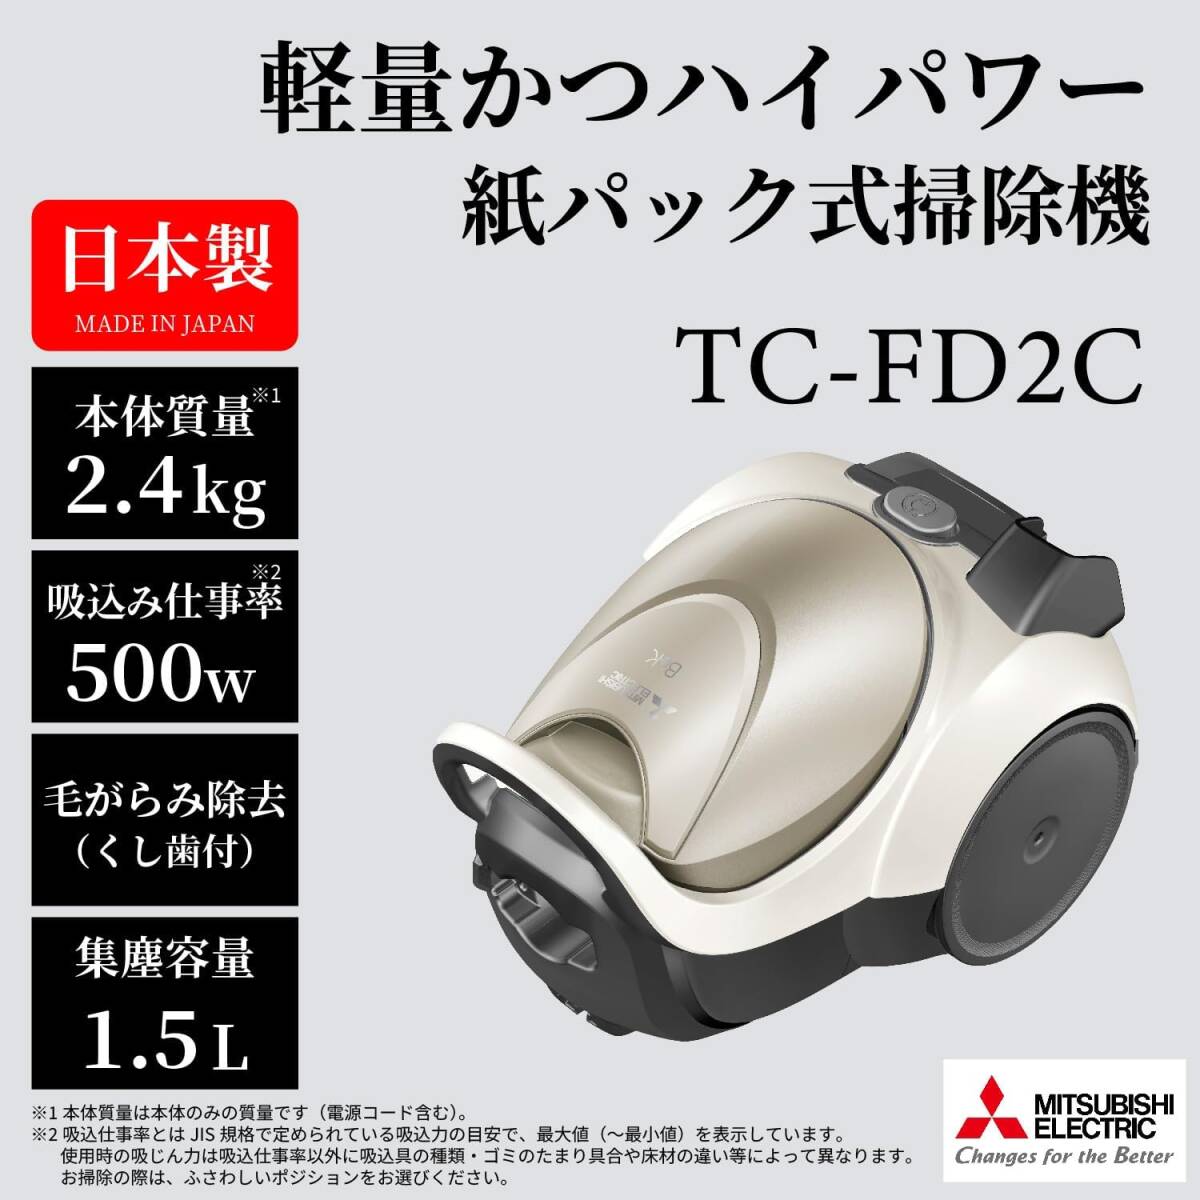 三菱 TC-FD2C-N Be-K(ビケイ) 紙パック掃除機 小型 軽量 自走式パワーブラシ からみにくい 日本製 1年保証付 程度極上 送料無料 の画像2